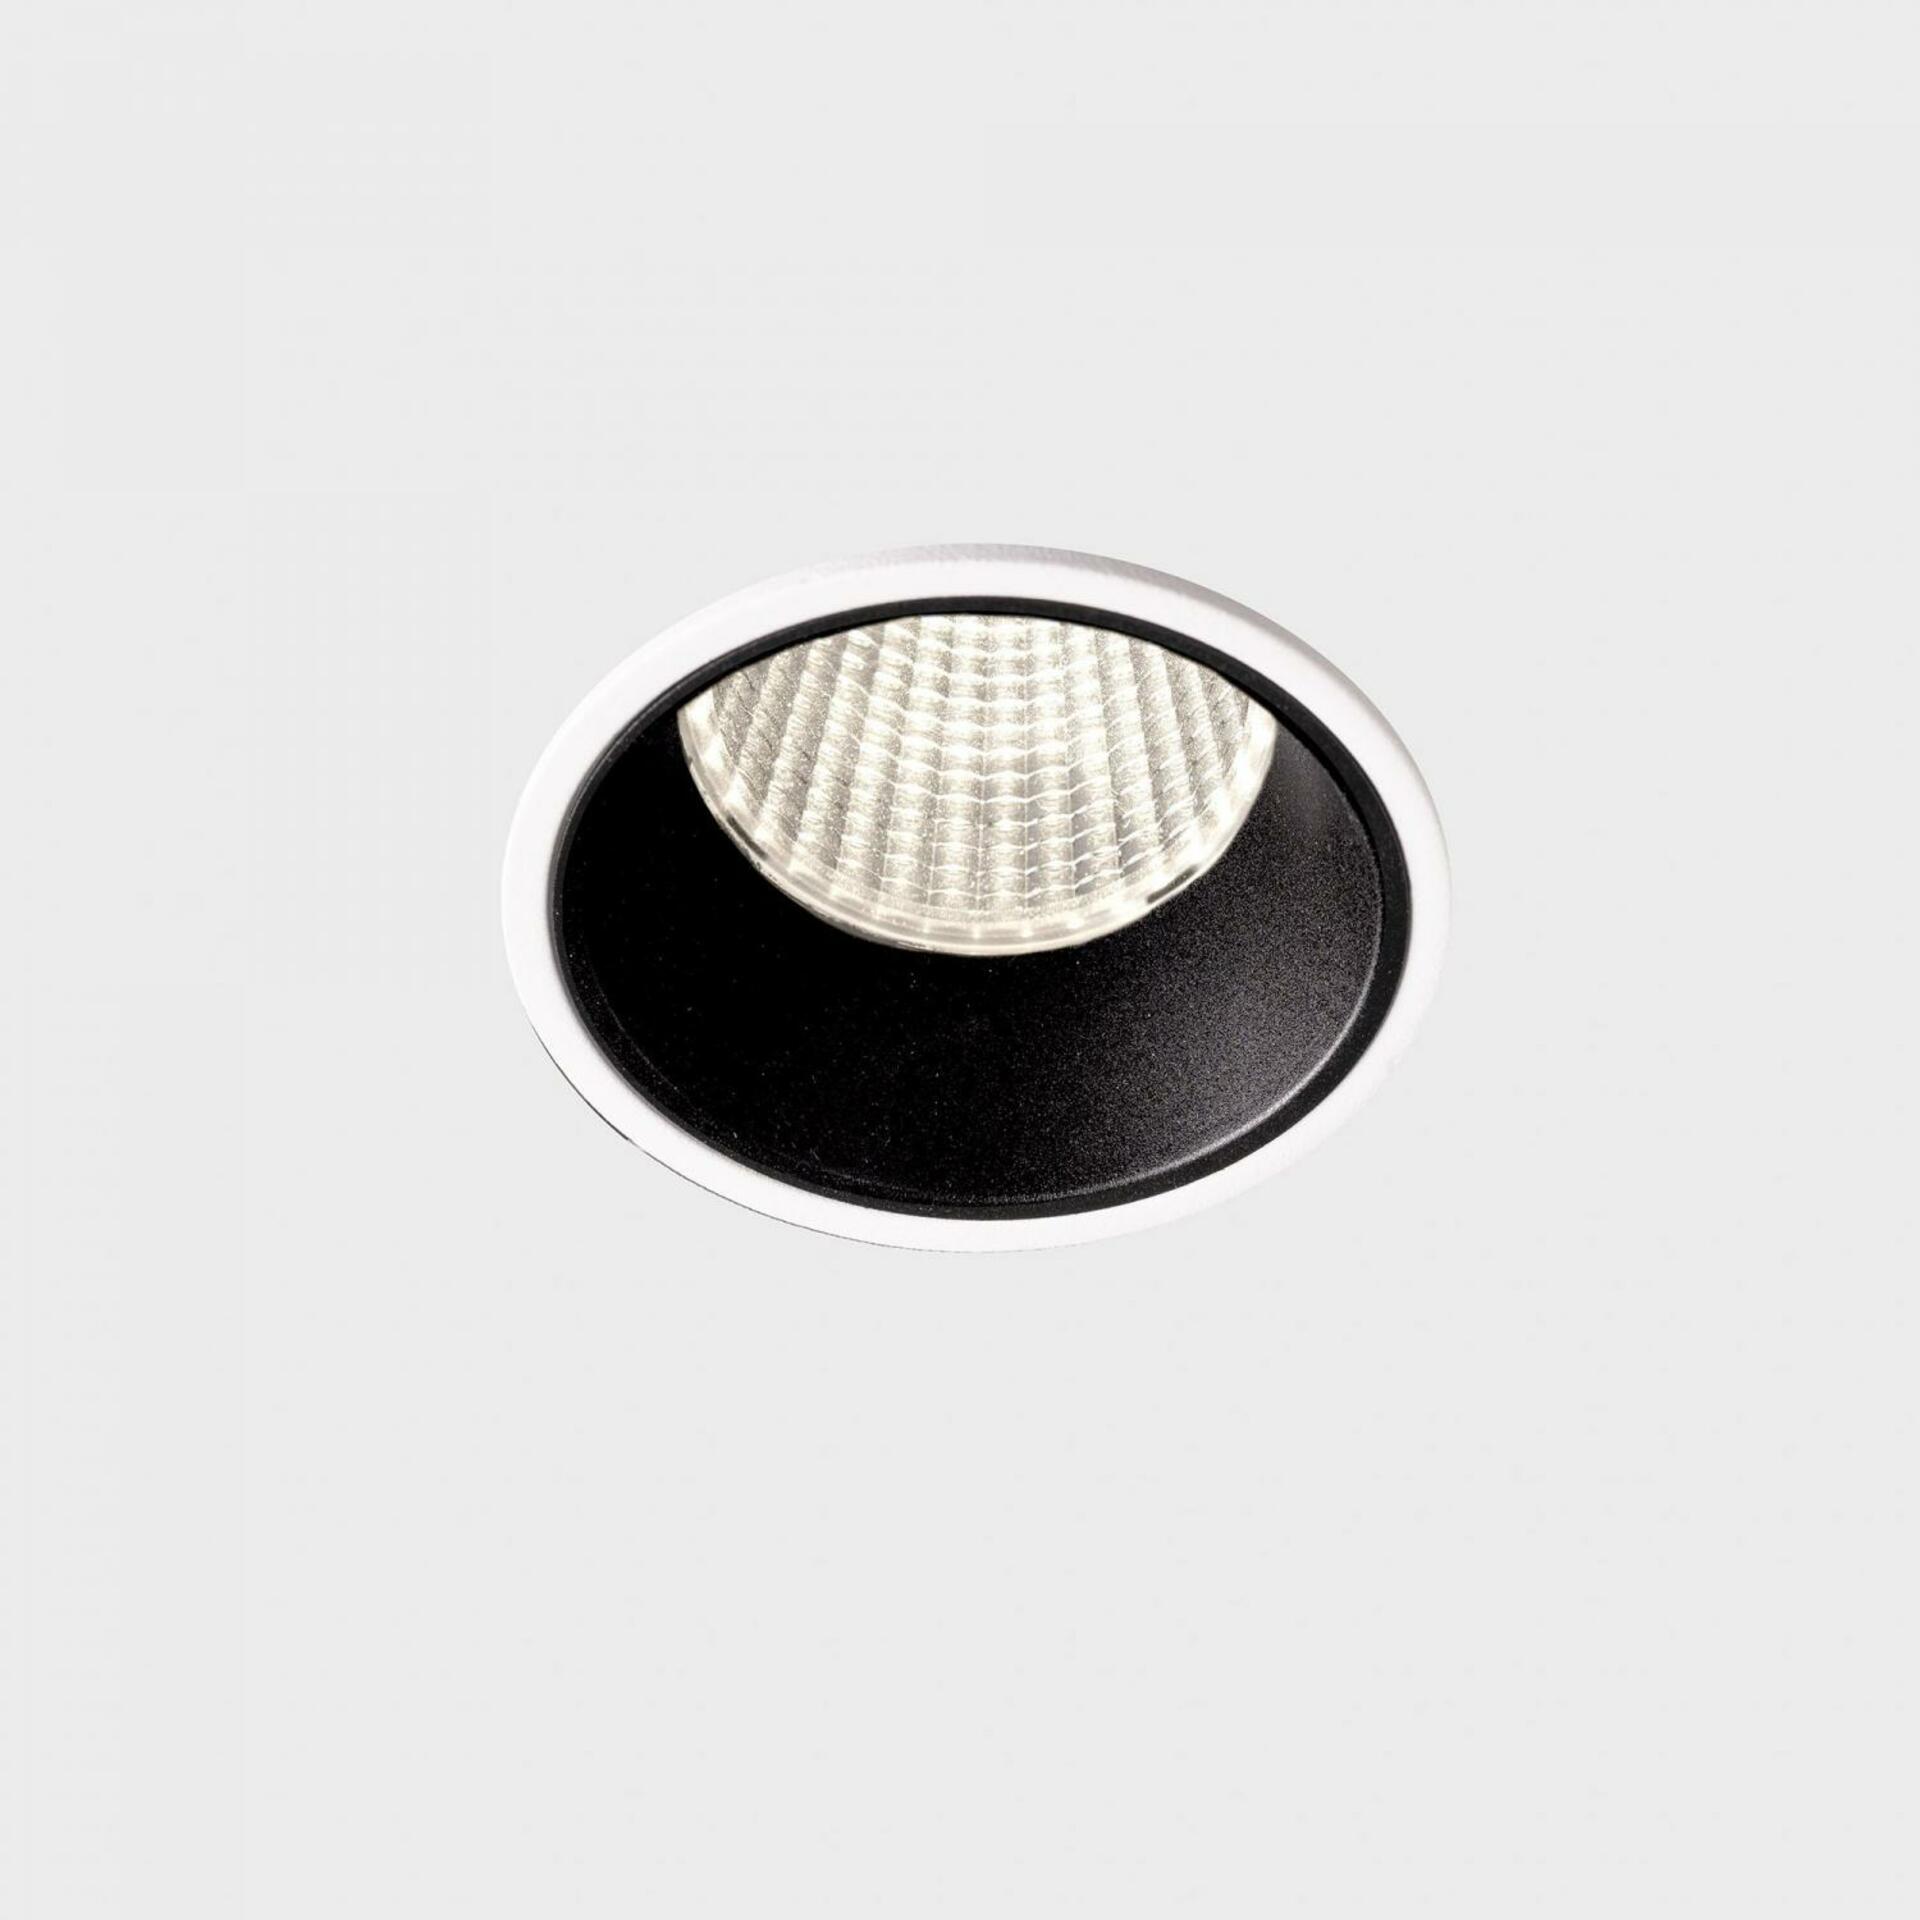 KOHL LIGHTING KOHL-Lighting VERSUS zapuštěné svítidlo s rámečkem pr. 60 mm bílá-černá 38° 5 W CRI 80 4000K DALI